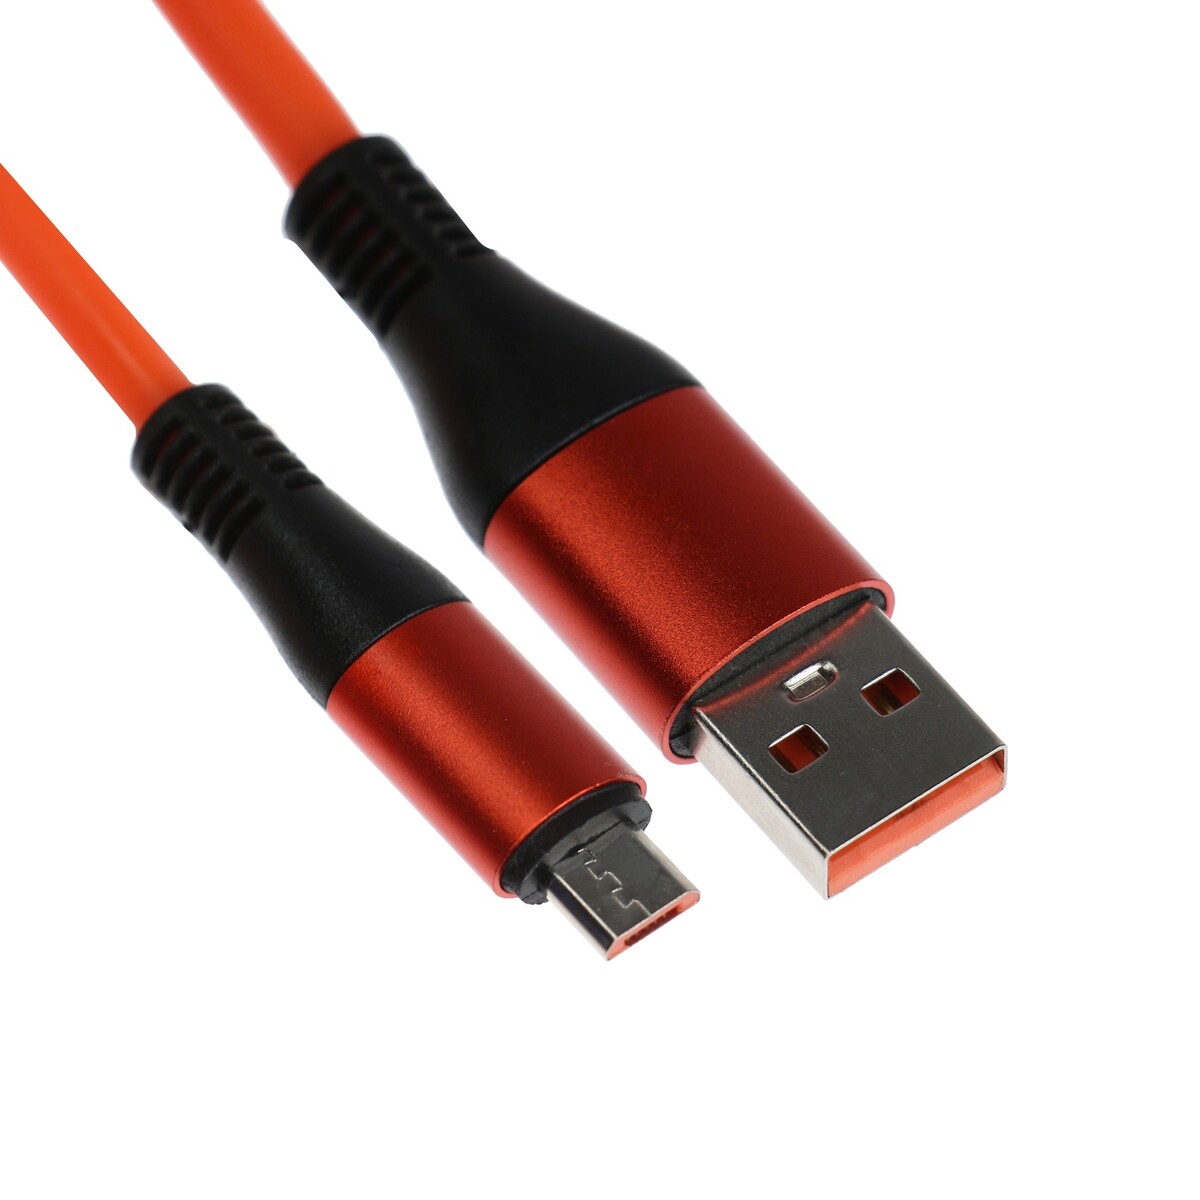 Кабель microusb - usb, 2.4 a, оплетка tpe, утолщенный, 1 метр, оранжевый кабель microusb usb 2 4 a оплетка tpe утолщенный 1 метр